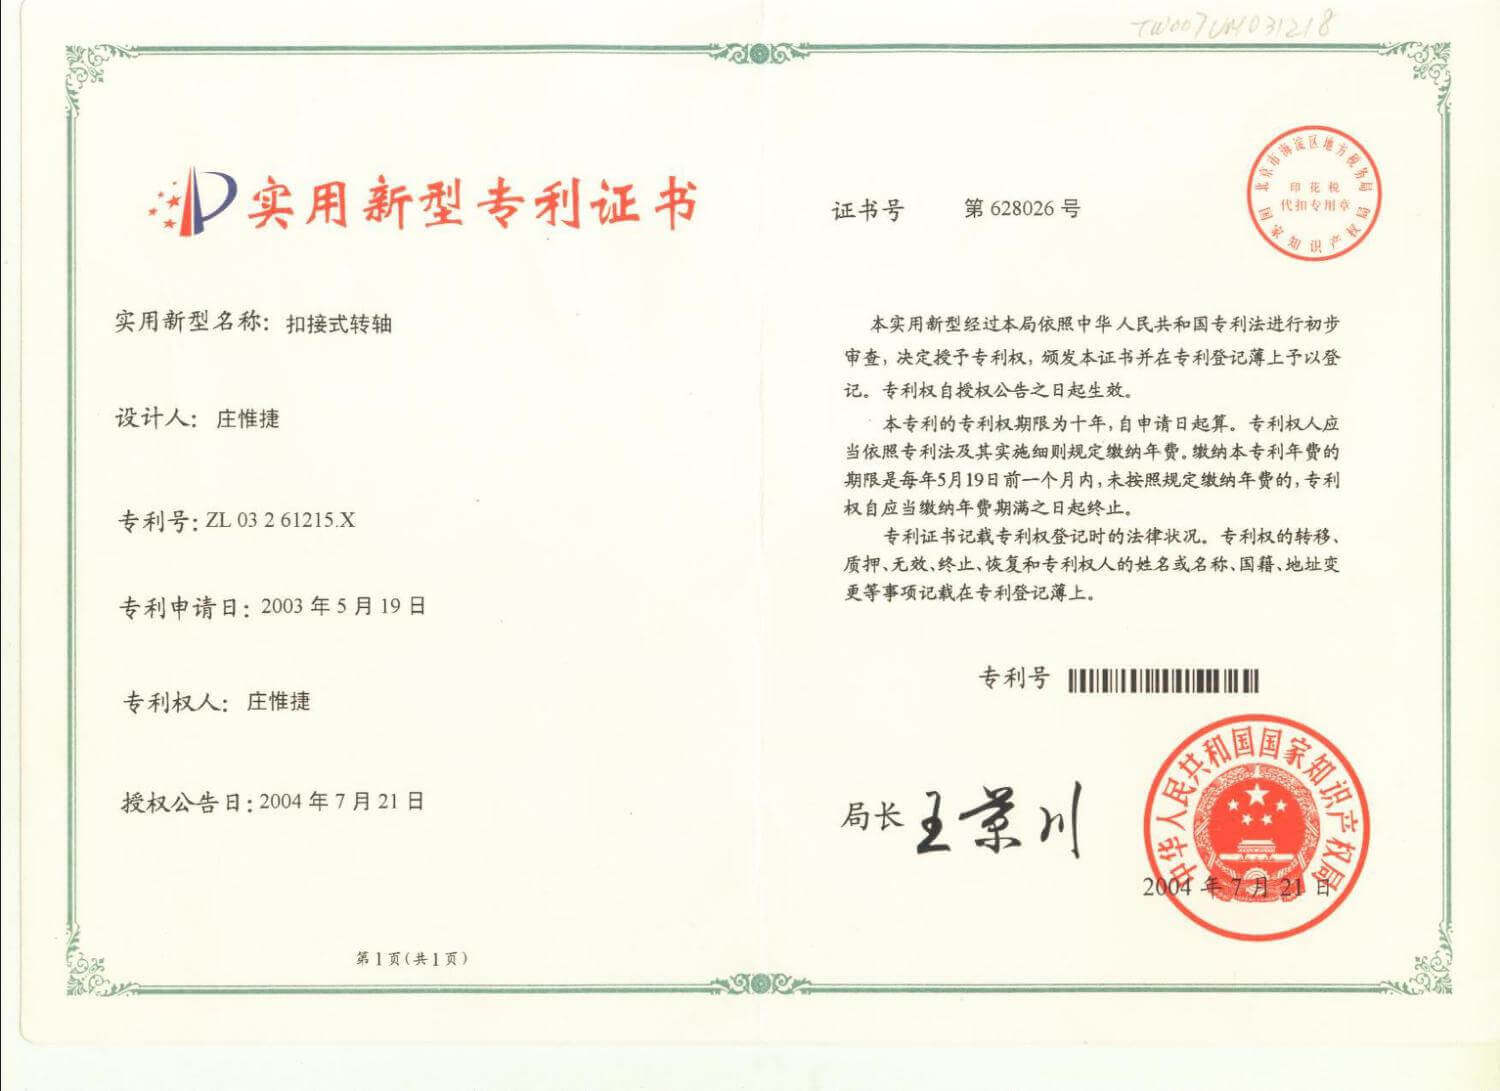 Chienfu-Tec CNC patents in Taiwan-6